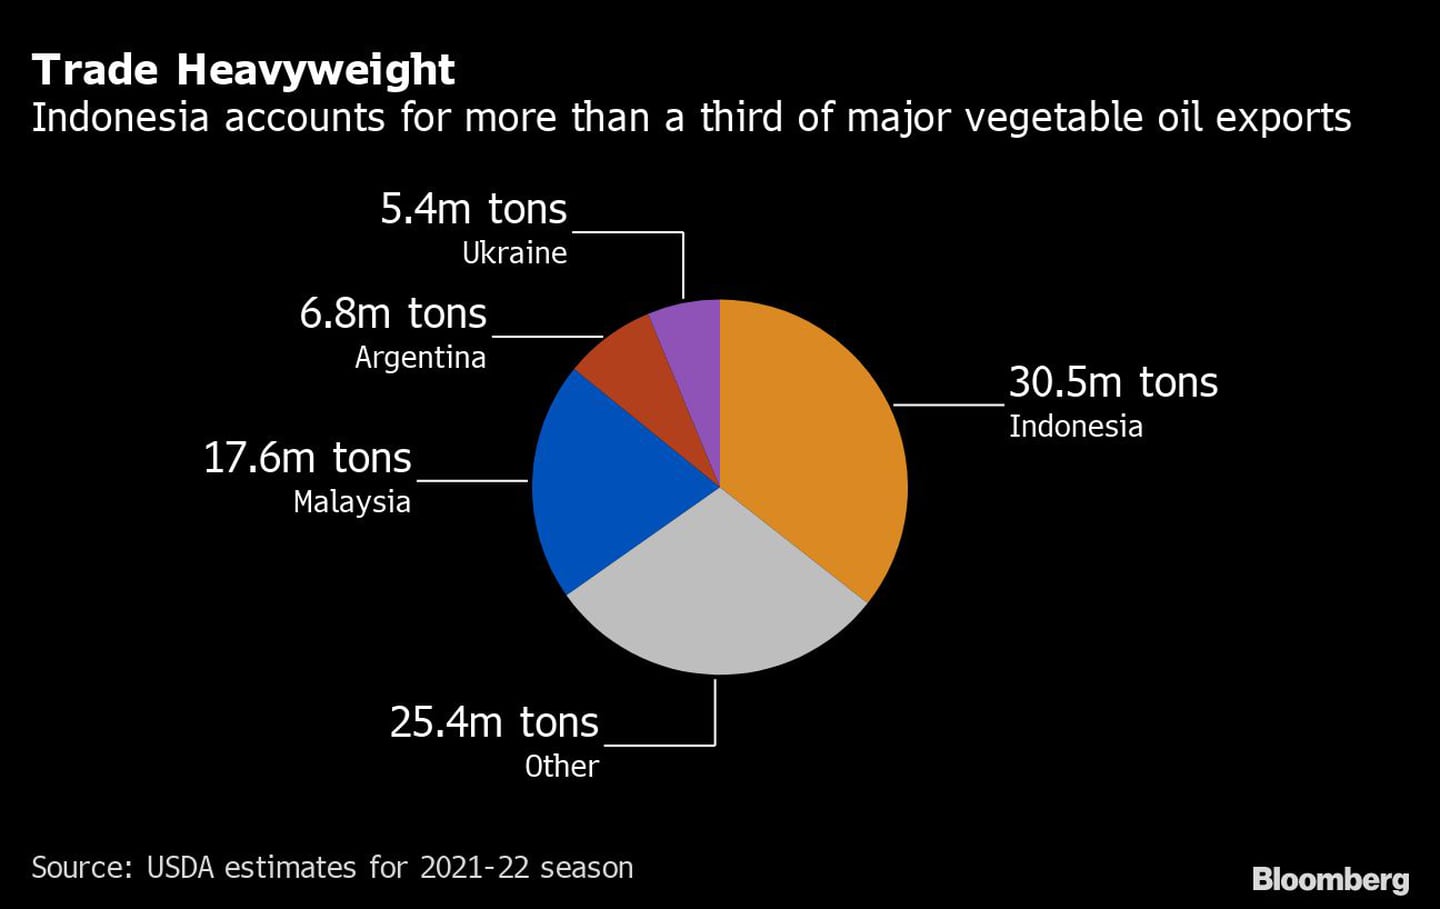 Peso comercial
Indonesia representa más de un tercio de las principales exportaciones de aceite vegetal
30,5 millones de toneladas Indonesia, 25,4 millones de toneladas otros, 17,6 millones de toneladas Malasia, 6,8 millones de toneladas Argentina, 5,4 millones de toneladas Ucraniadfd